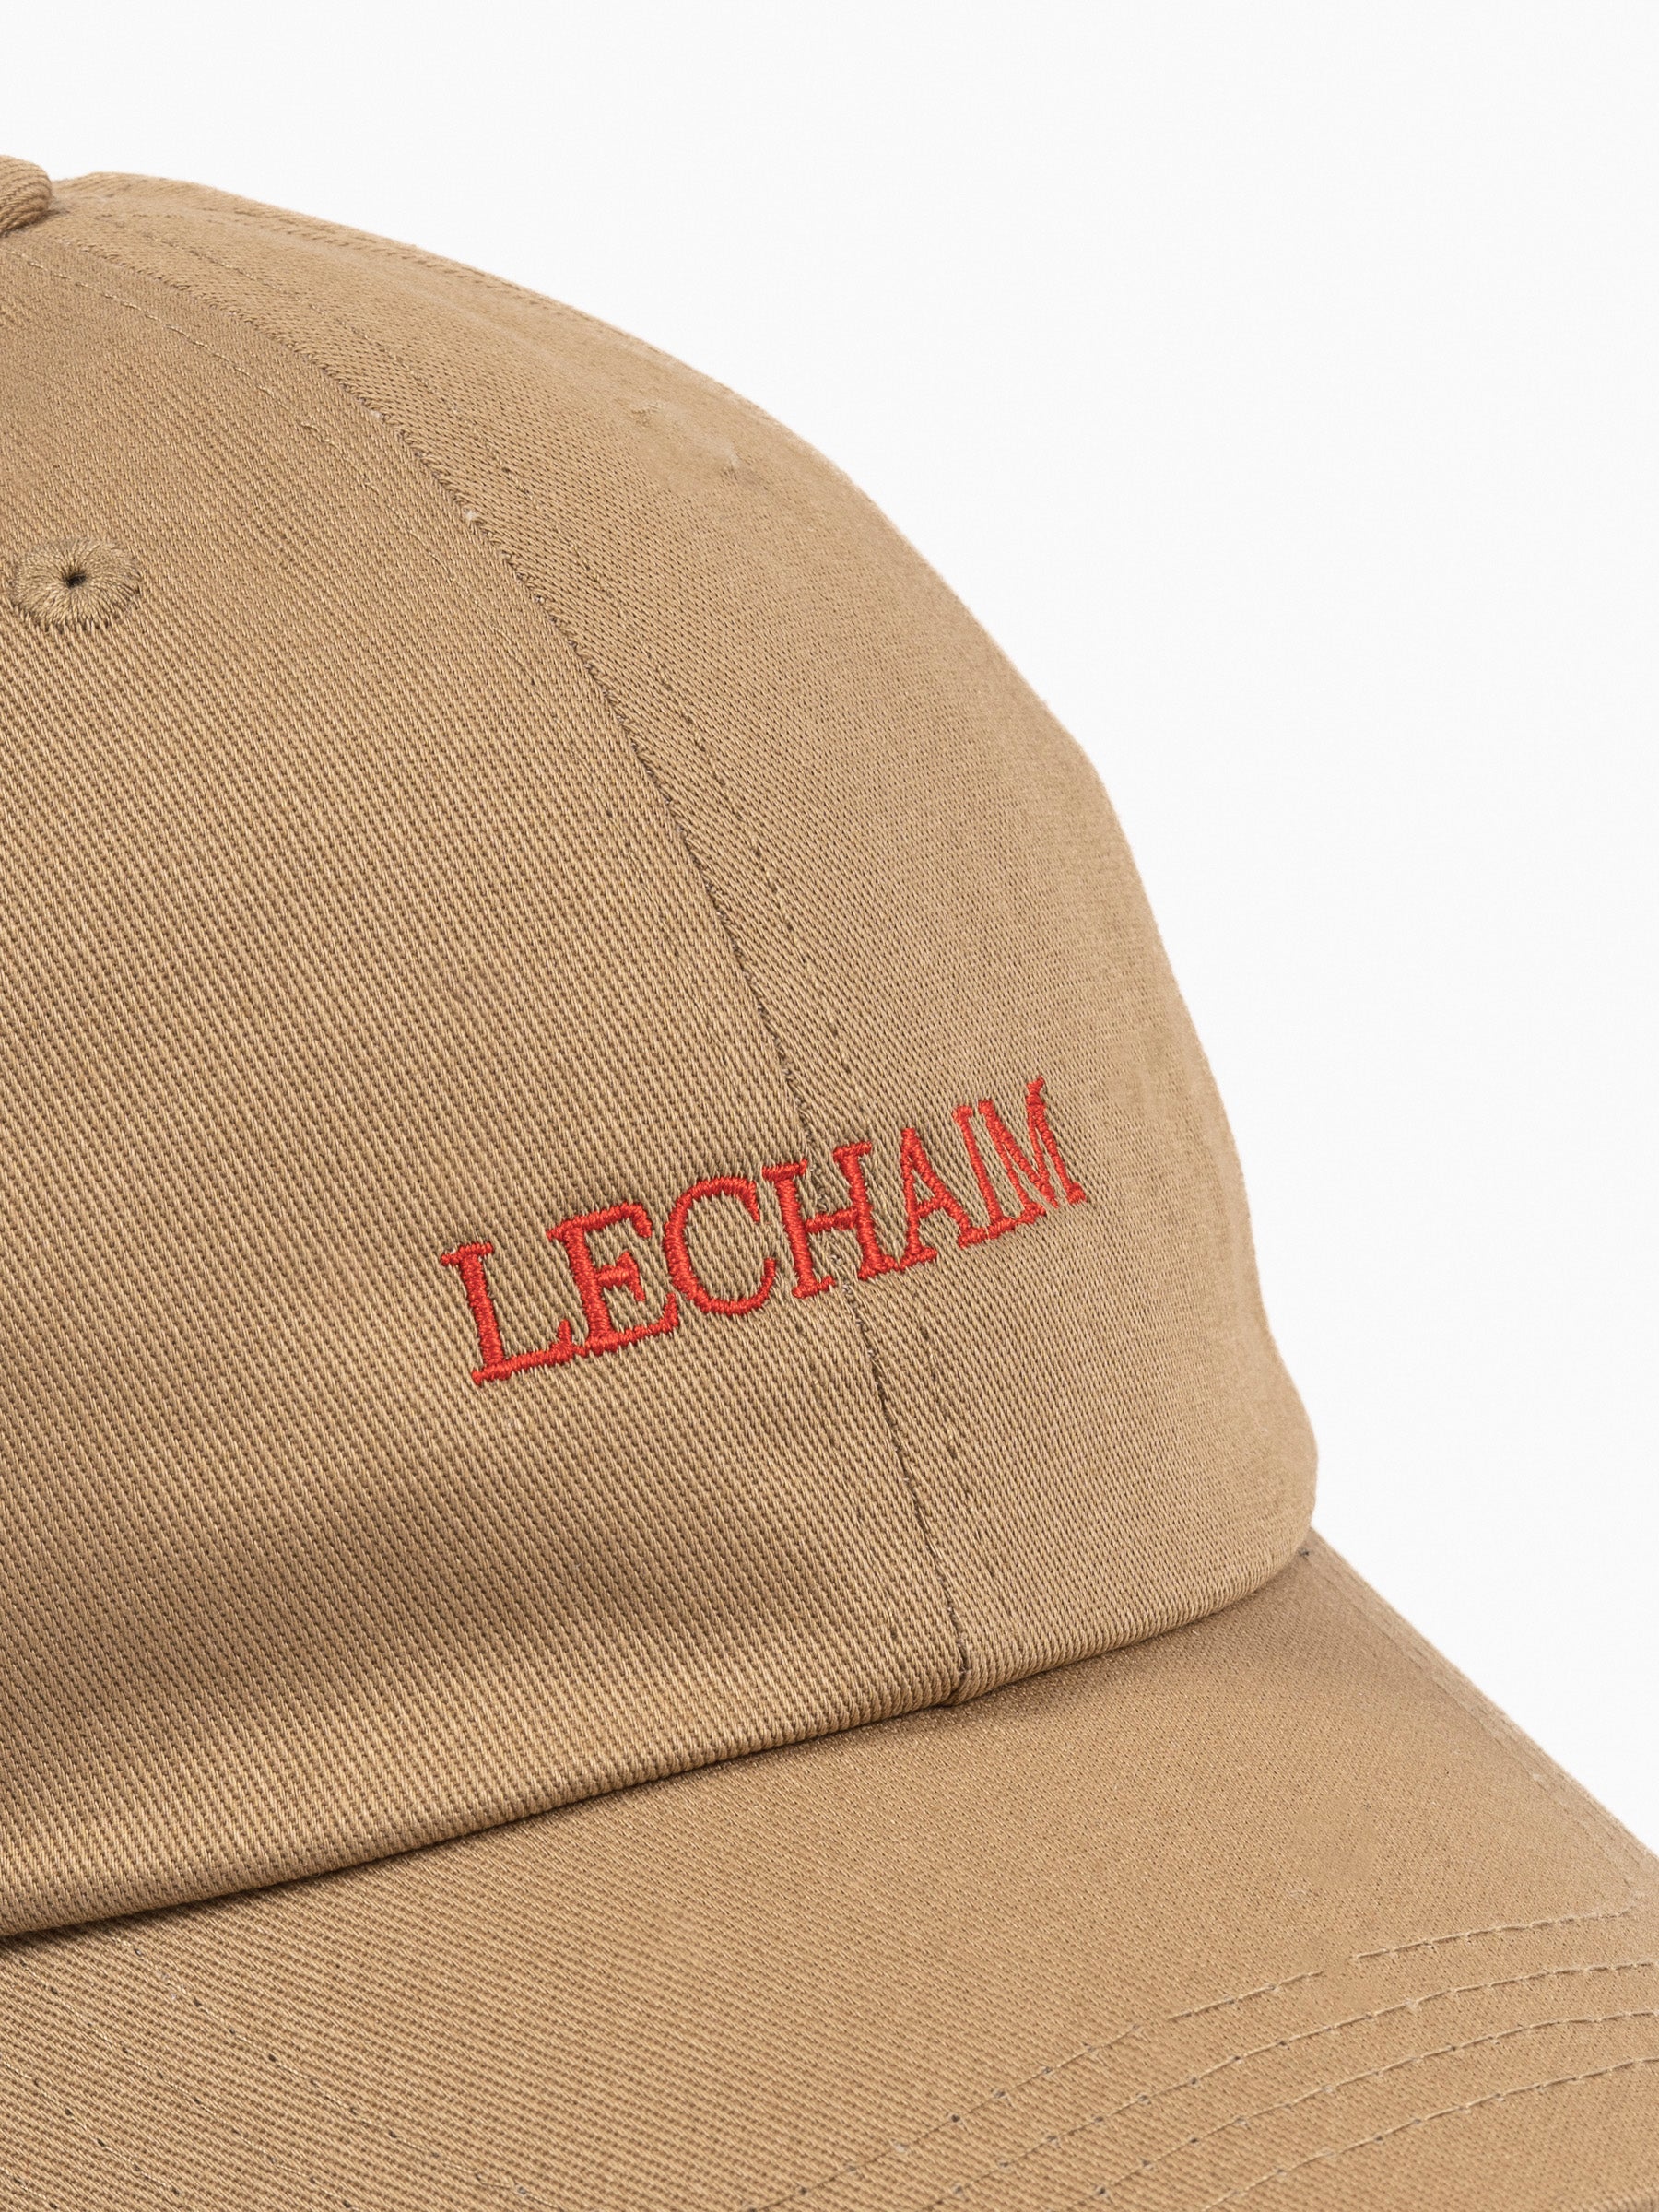 Lechaim Vintage Cap Khaki/Red